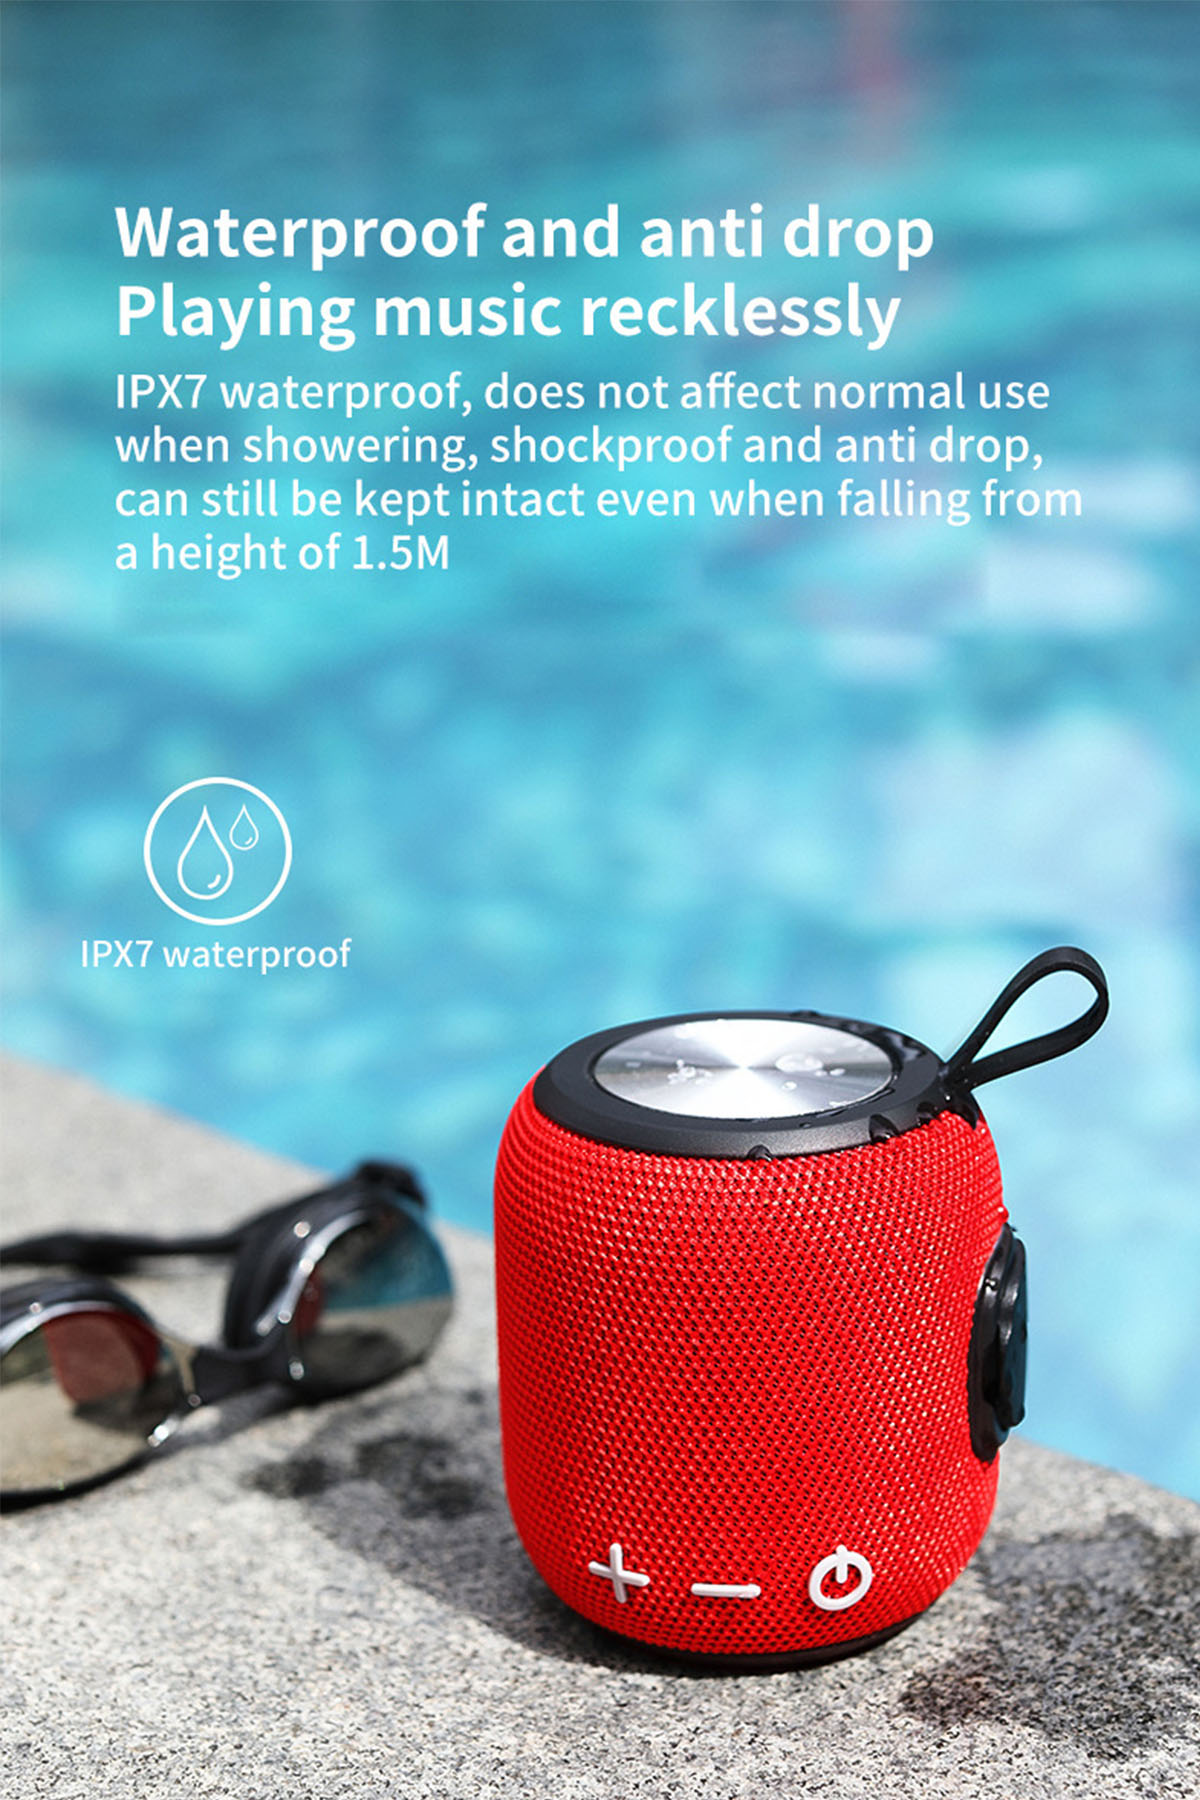 BRIGHTAKE SoundWave: HIFI Bluetooth-Lautsprecher, Langzeitbatterie Blau Sound, Outdoor-Tauglich